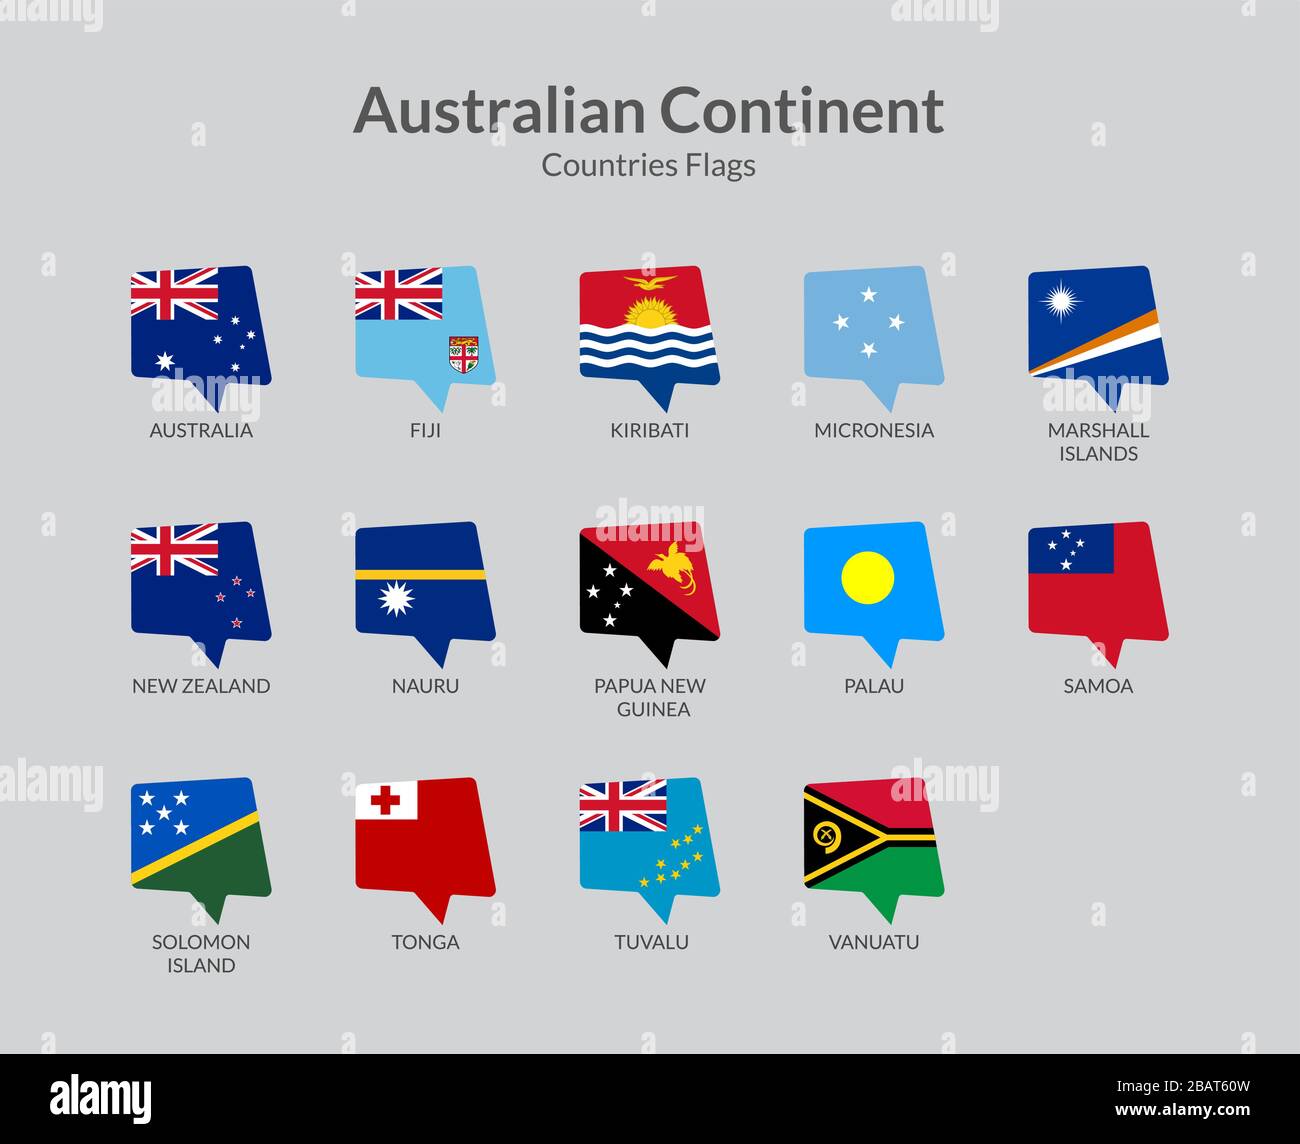 Australia Continent countries flag Icons collection Illustrazione Vettoriale